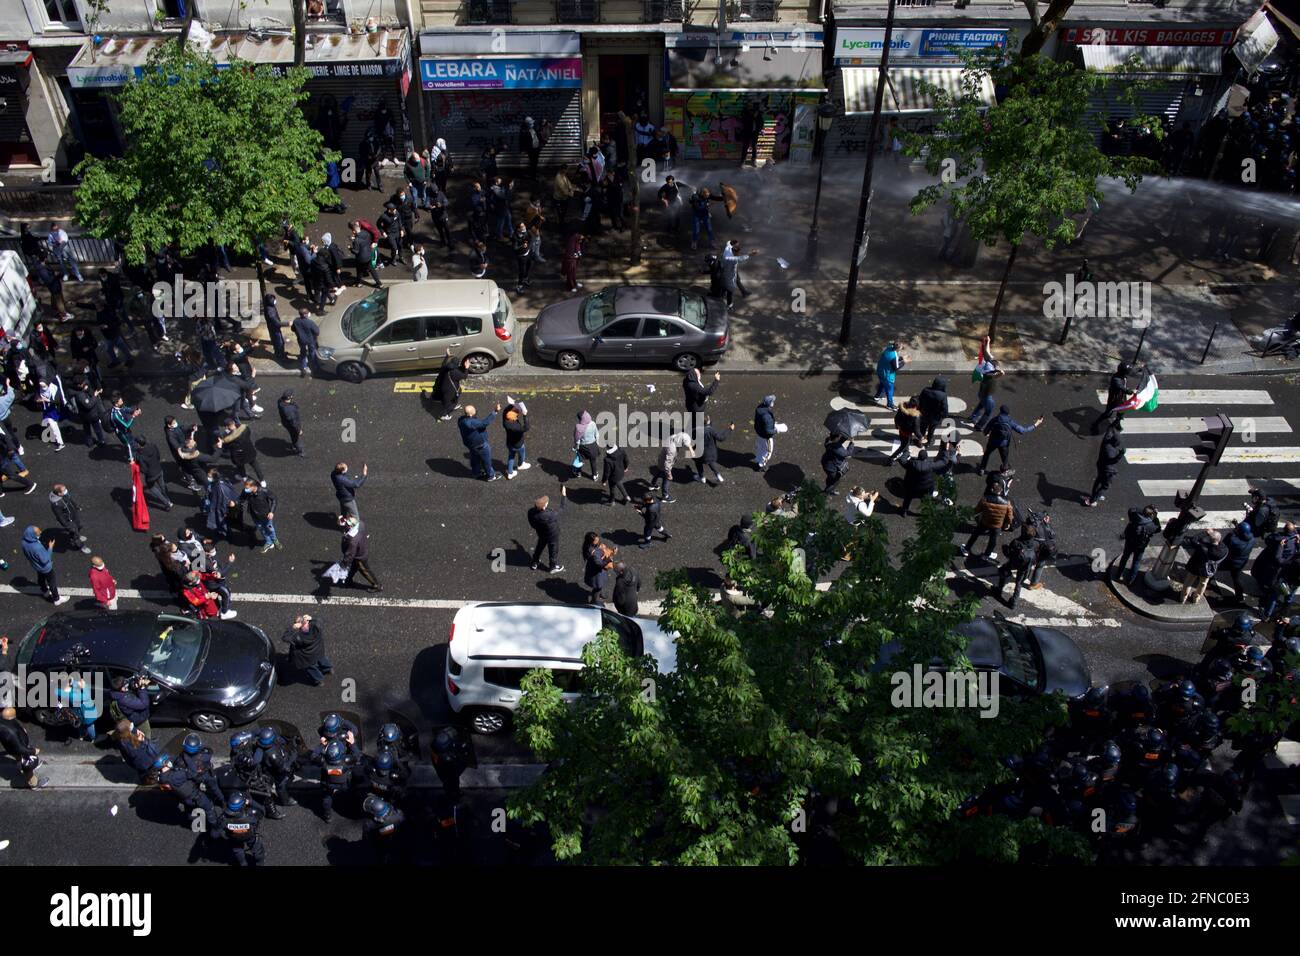 La polizia spara il cannone ad acqua ai sostenitori pro-palestinesi che manifestano a Parigi. Boulevard Barbès, Parigi, Francia, 15 maggio 2021 Foto Stock